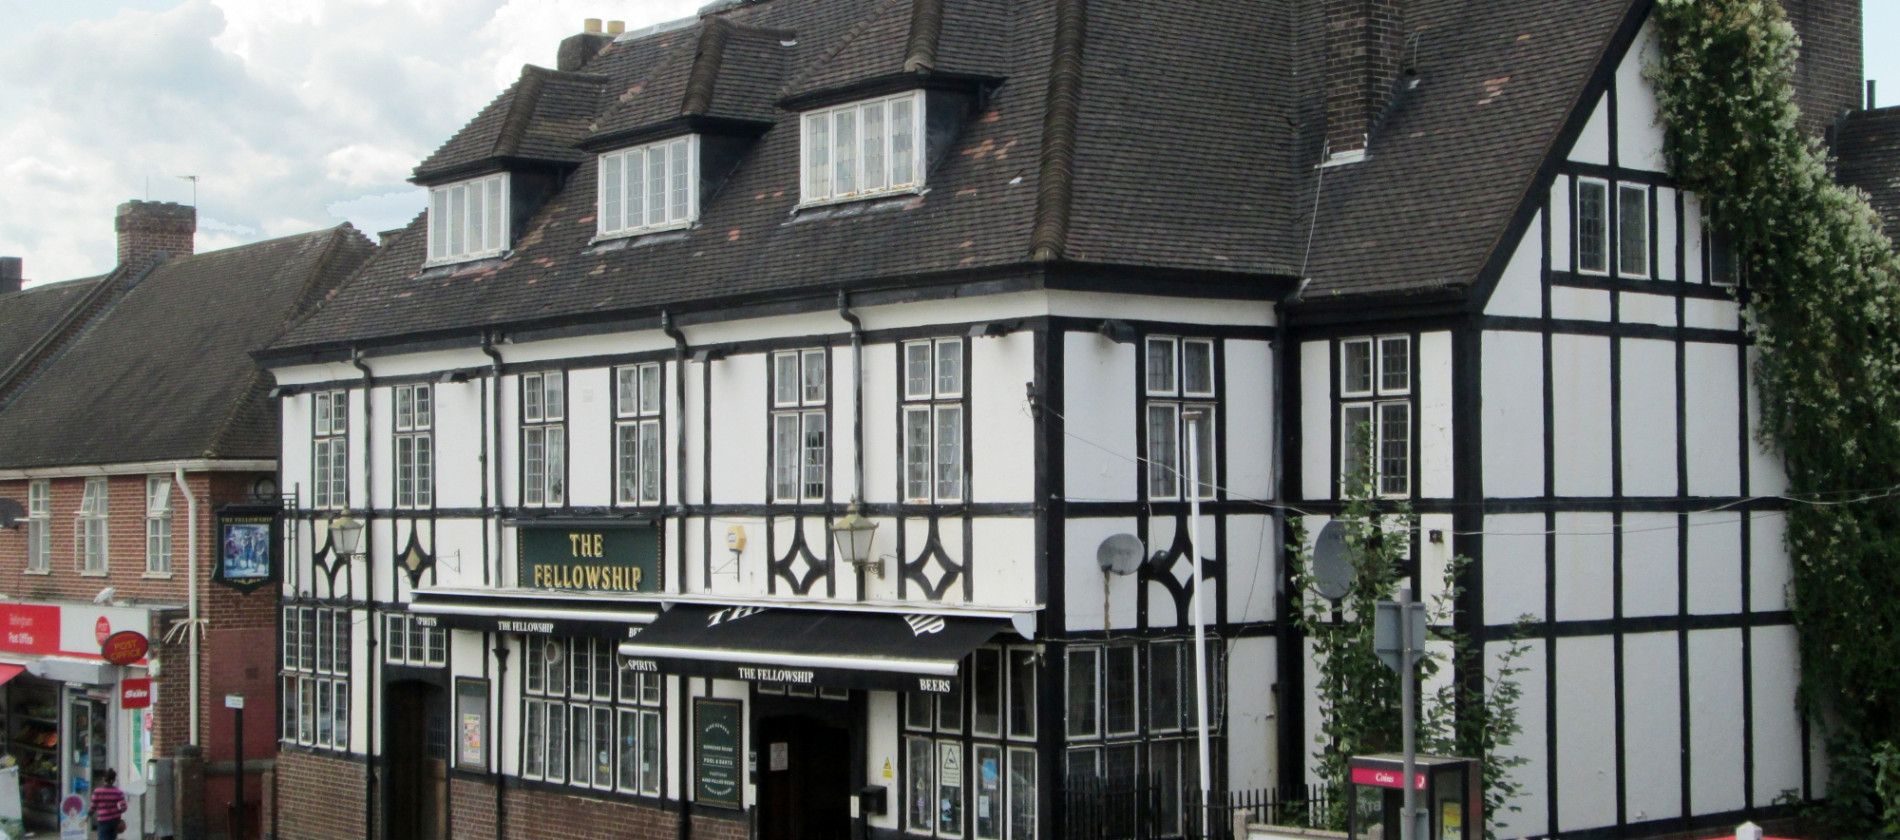 The Fellowship Inn, Bellingham